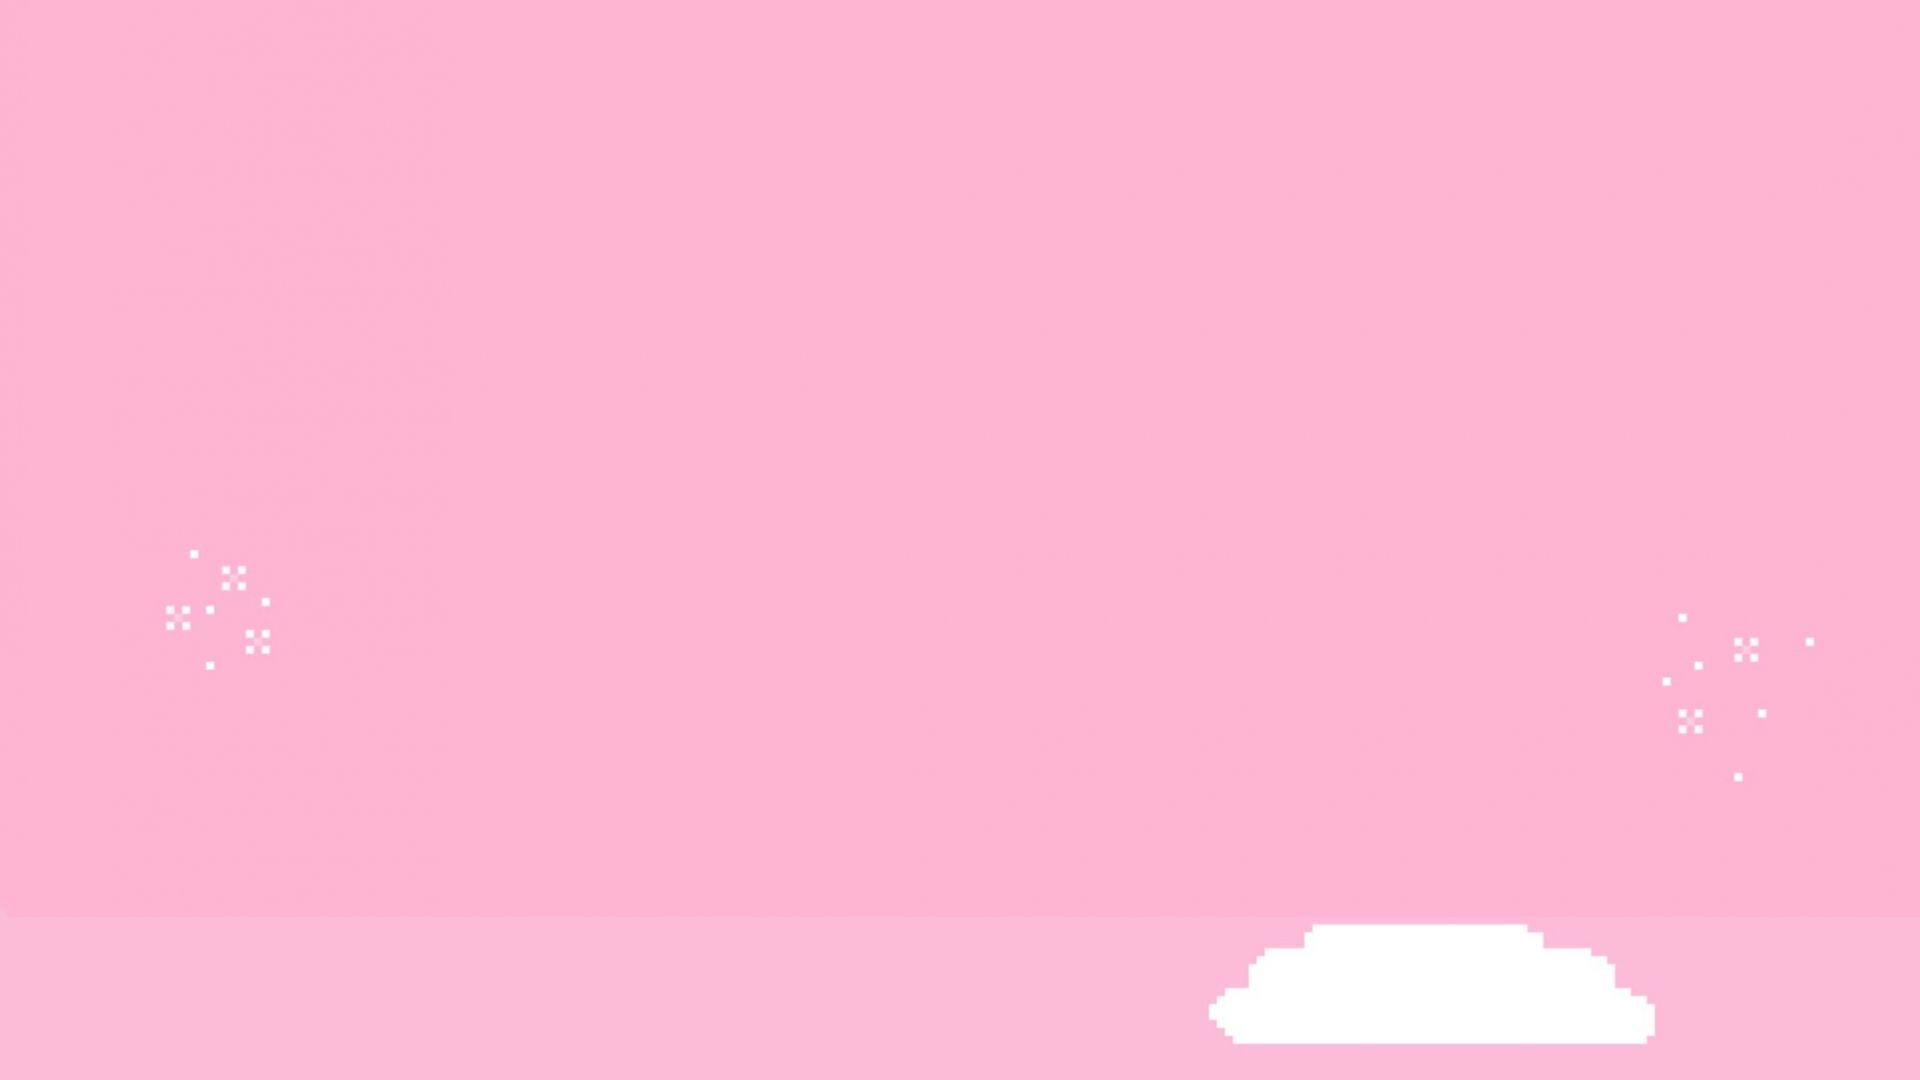 Hình nền thẩm mỹ dễ thương màu hồng sẽ giúp bạn có không gian làm việc trẻ trung, nổi bật và đầy sắc màu. Hãy thay đổi ngay hình nền điện thoại của bạn để có được không gian làm việc xinh đẹp và tinh tế.